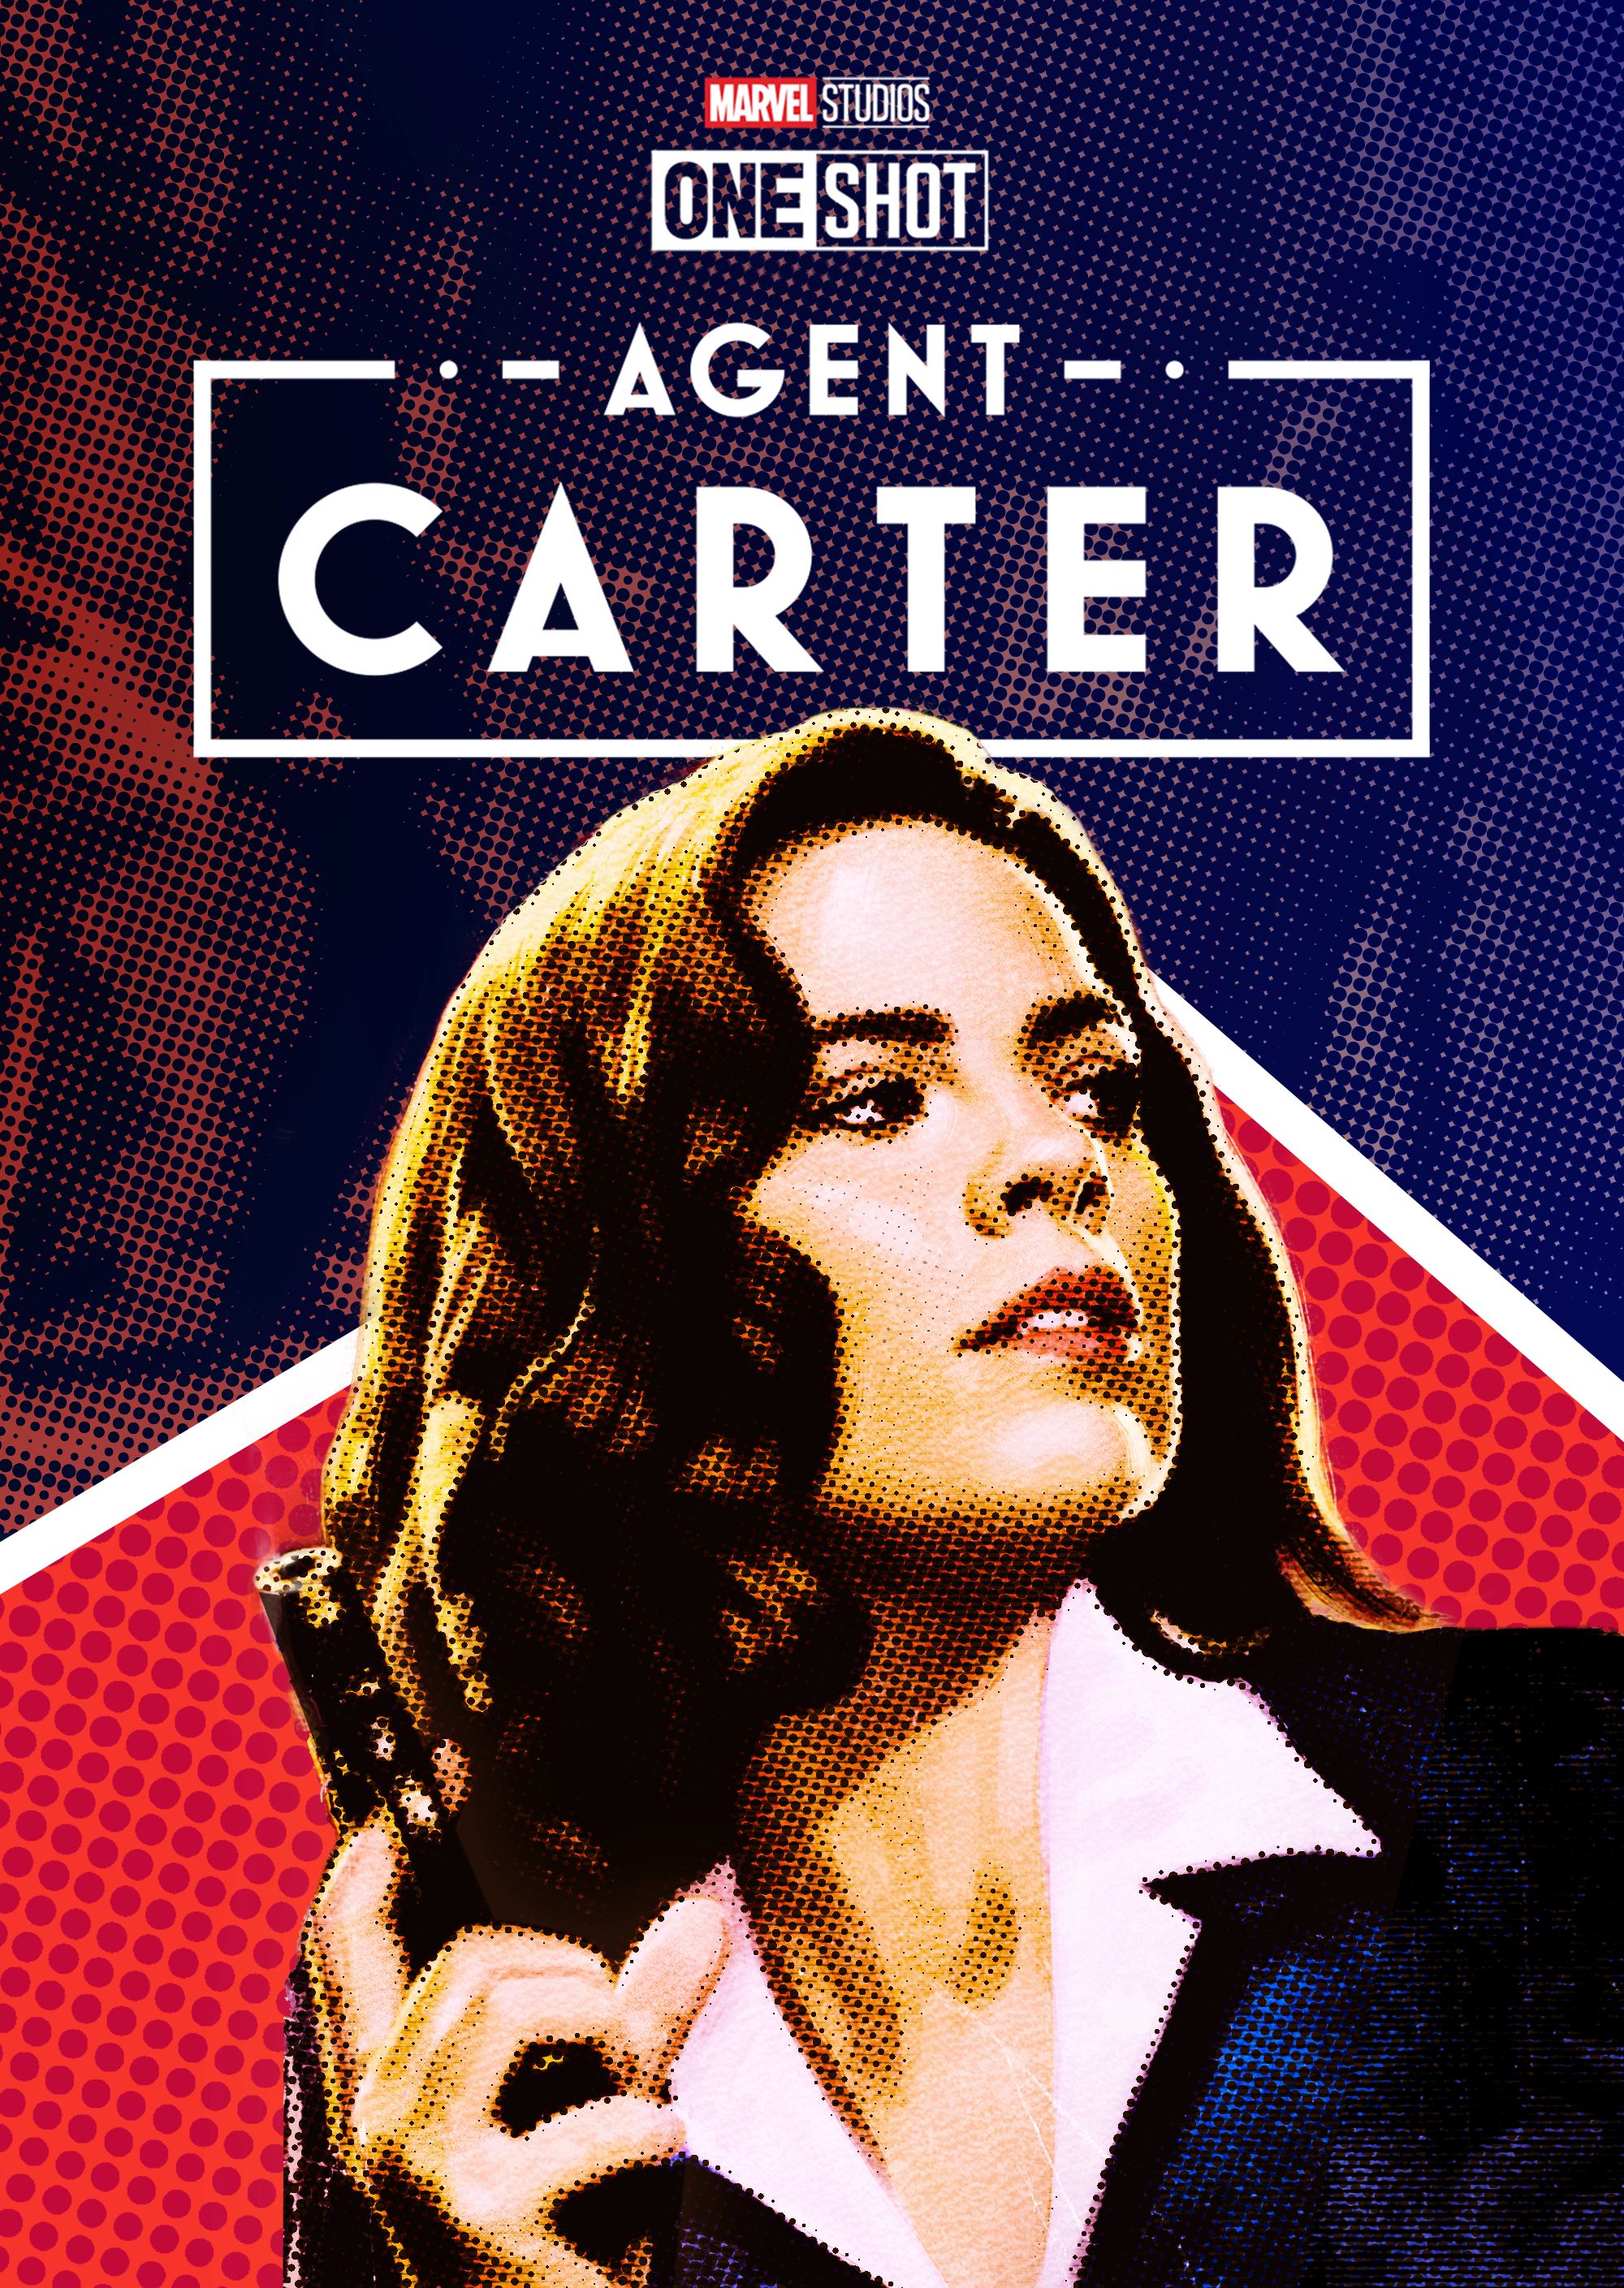 Carter agent Agent Carter